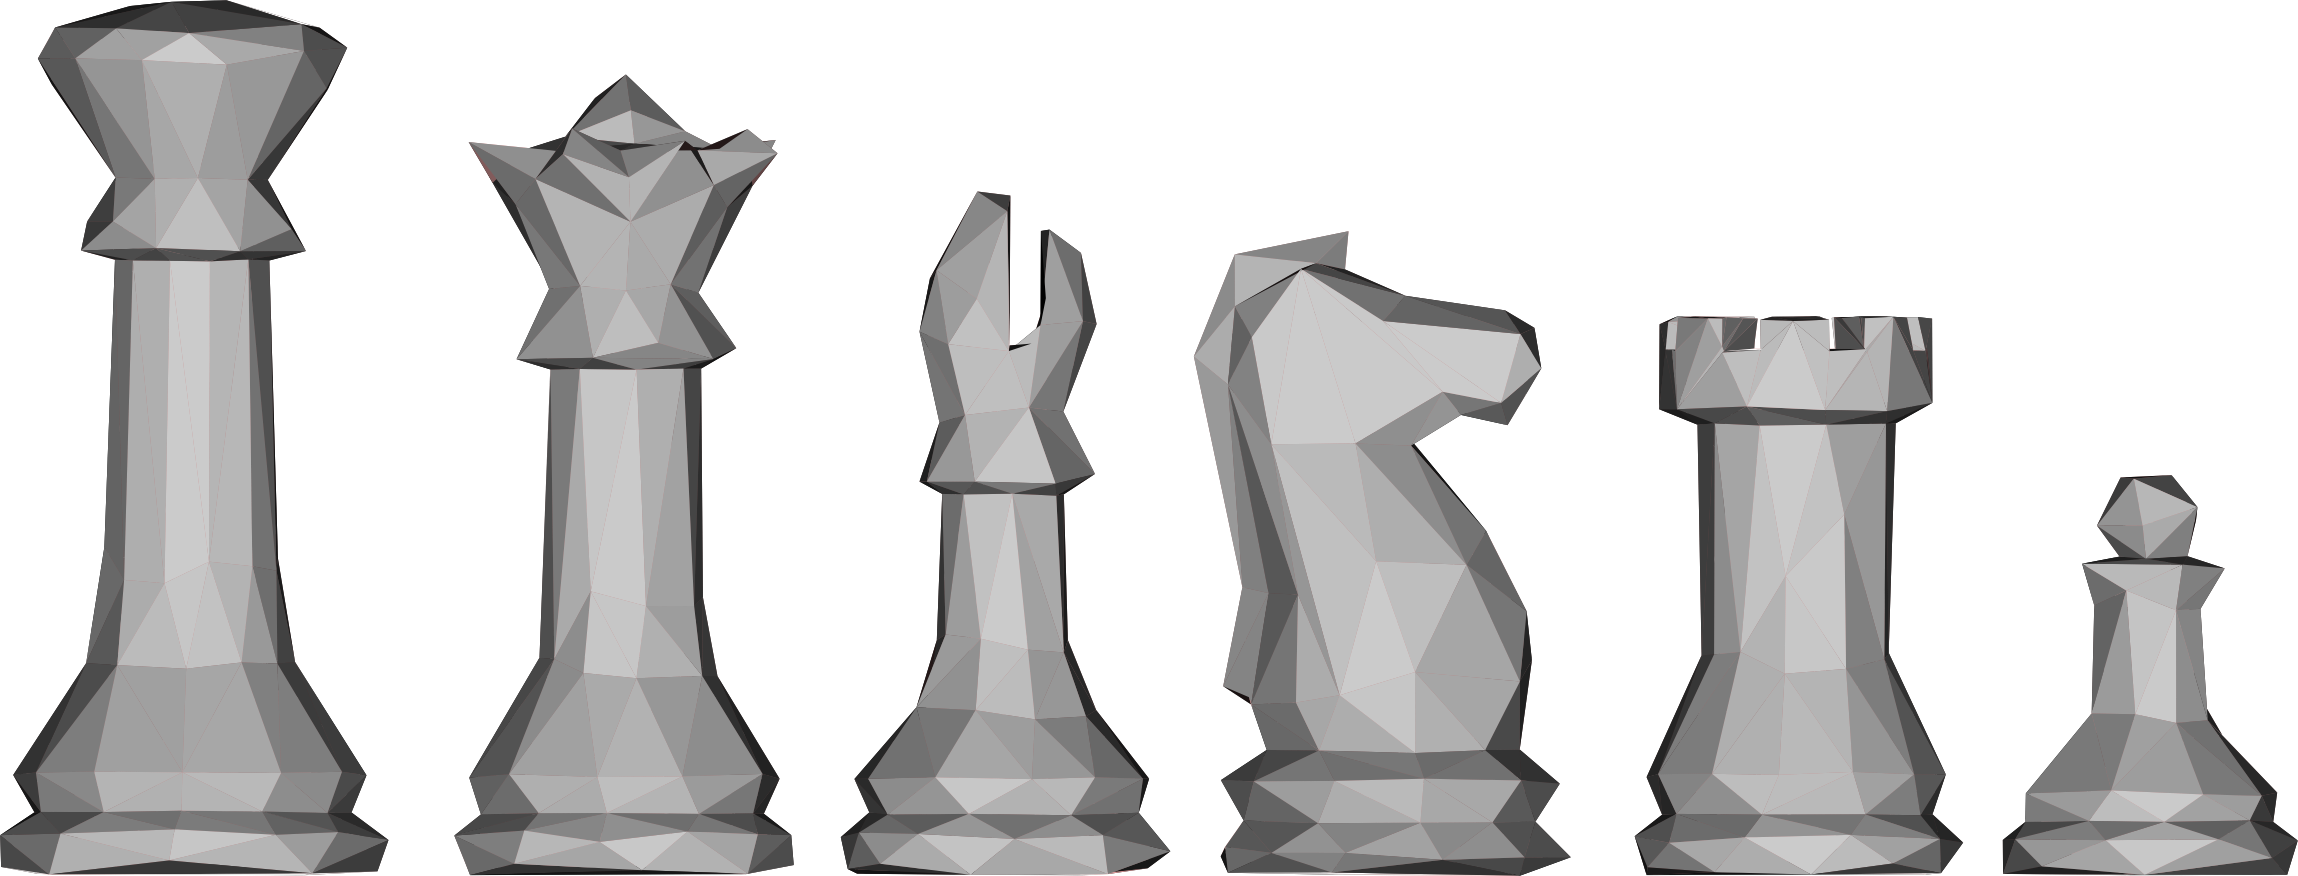 BetChess - Apostas em xadrez